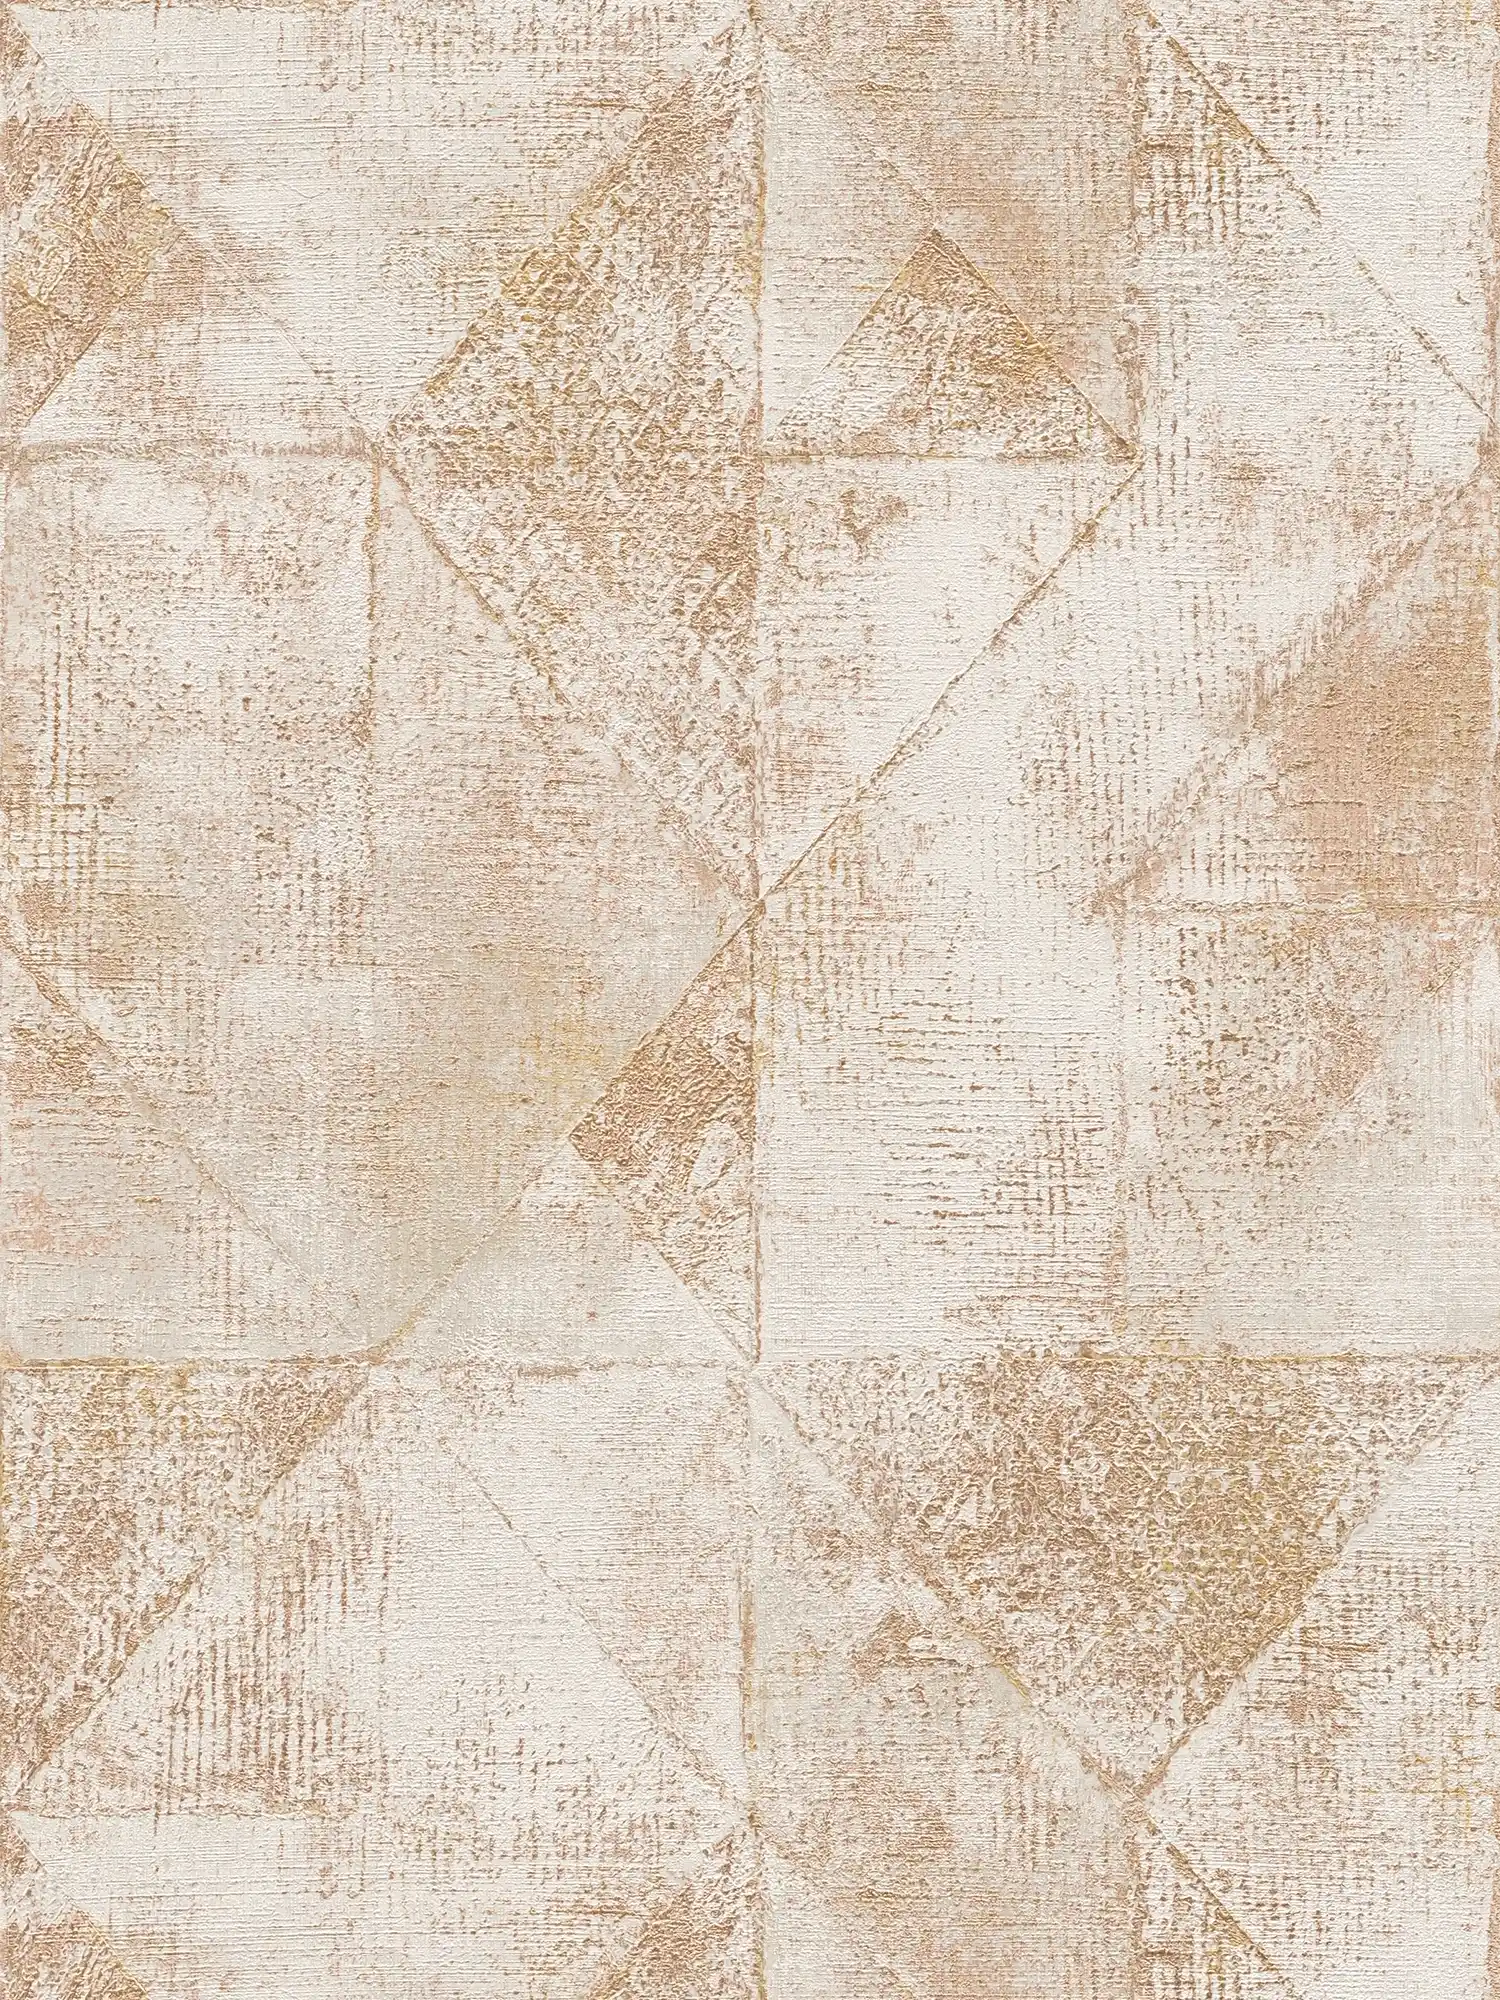         Metallic Grafik-Tapete mit Dreieck-Muster glänzend strukturiert – Gold, Grau
    